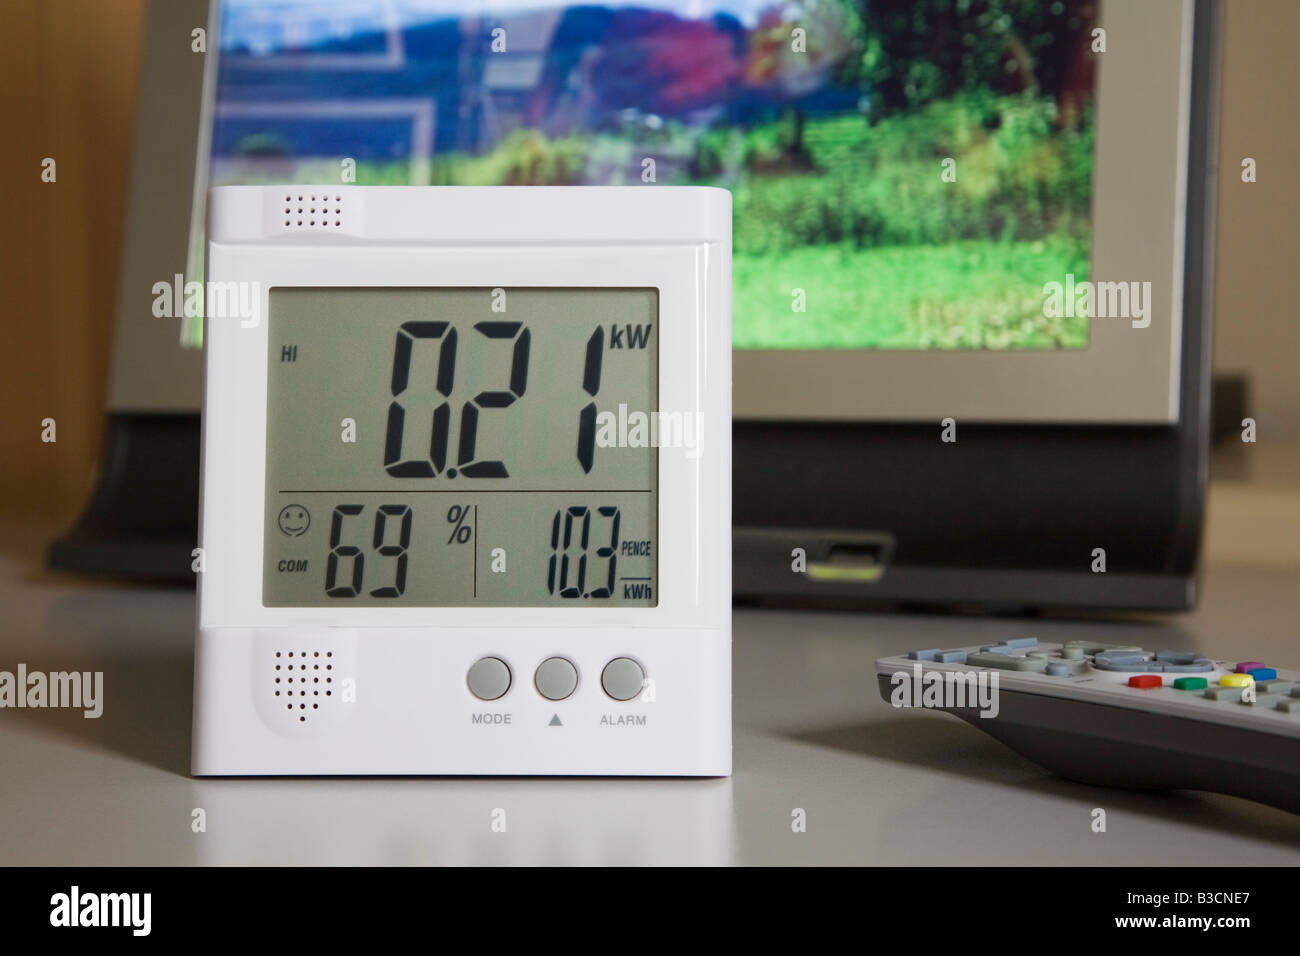 Primo piano del monitor di consumo energetico wireless Owl con display a LED che mostra i kilowatt di elettricità utilizzati da un televisore a schermo piatto. REGNO UNITO Foto Stock